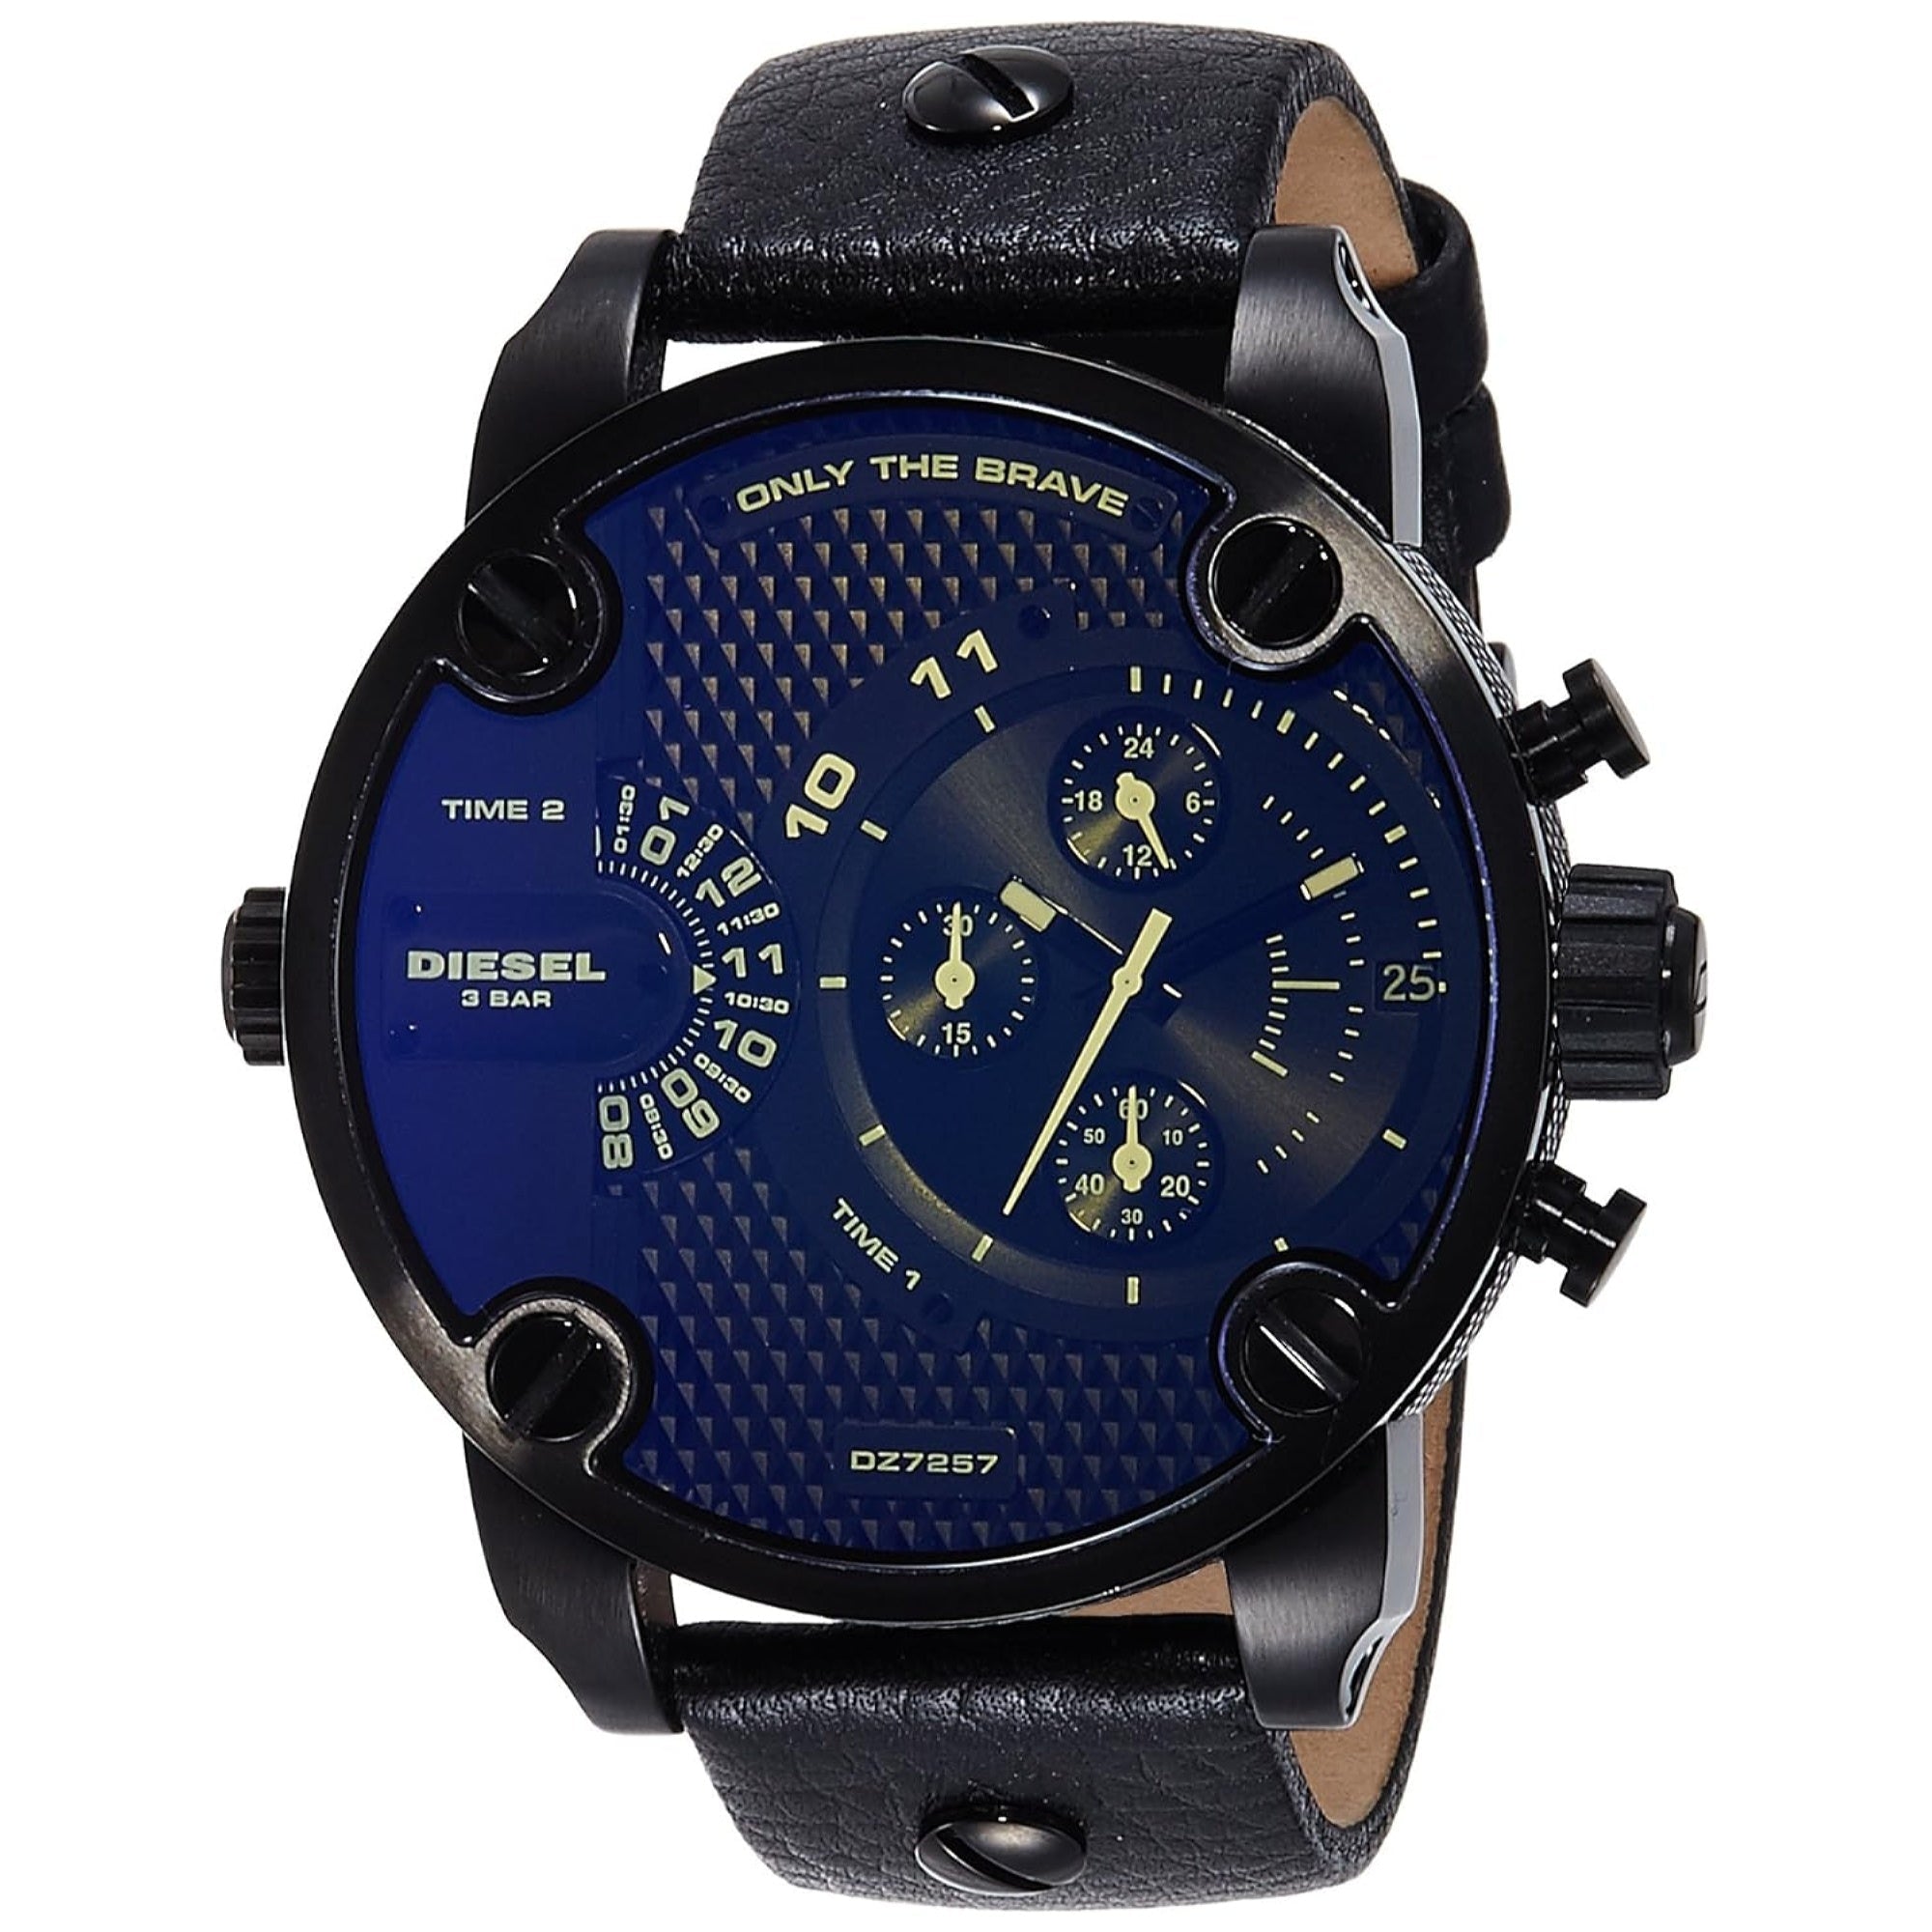 Diesel BadAss Quartz Chronograph 4 Time Zones Blue Dial Men's Watch DZ7257